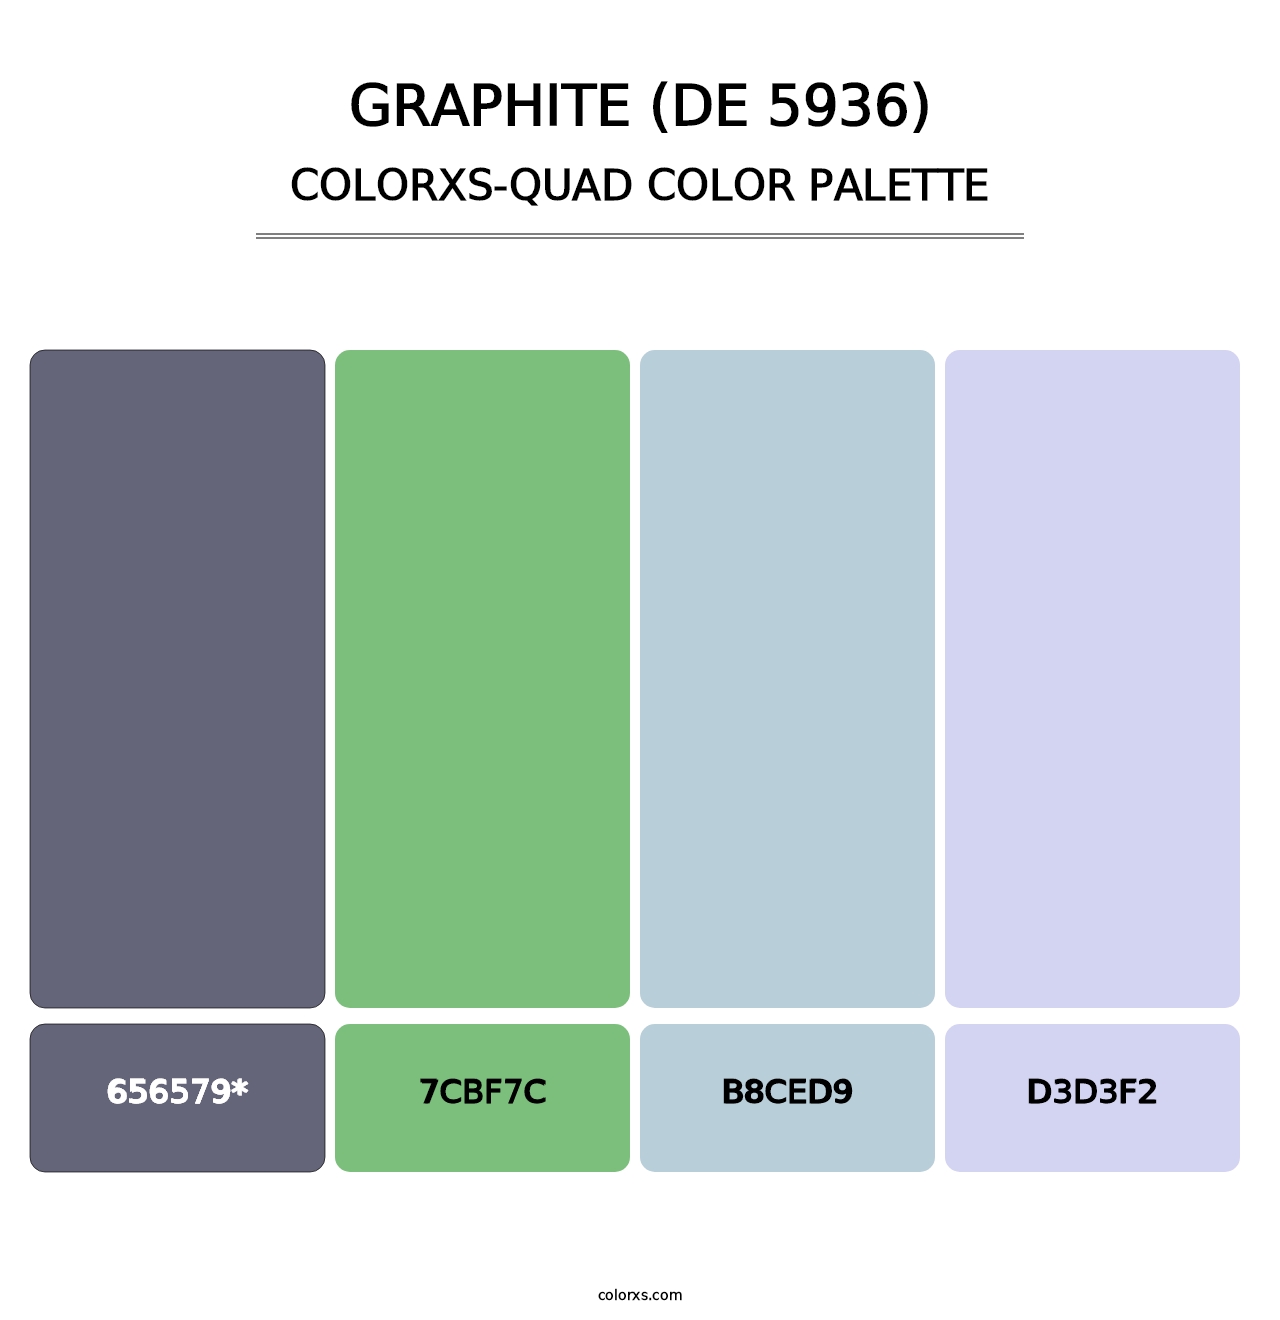 Graphite (DE 5936) - Colorxs Quad Palette